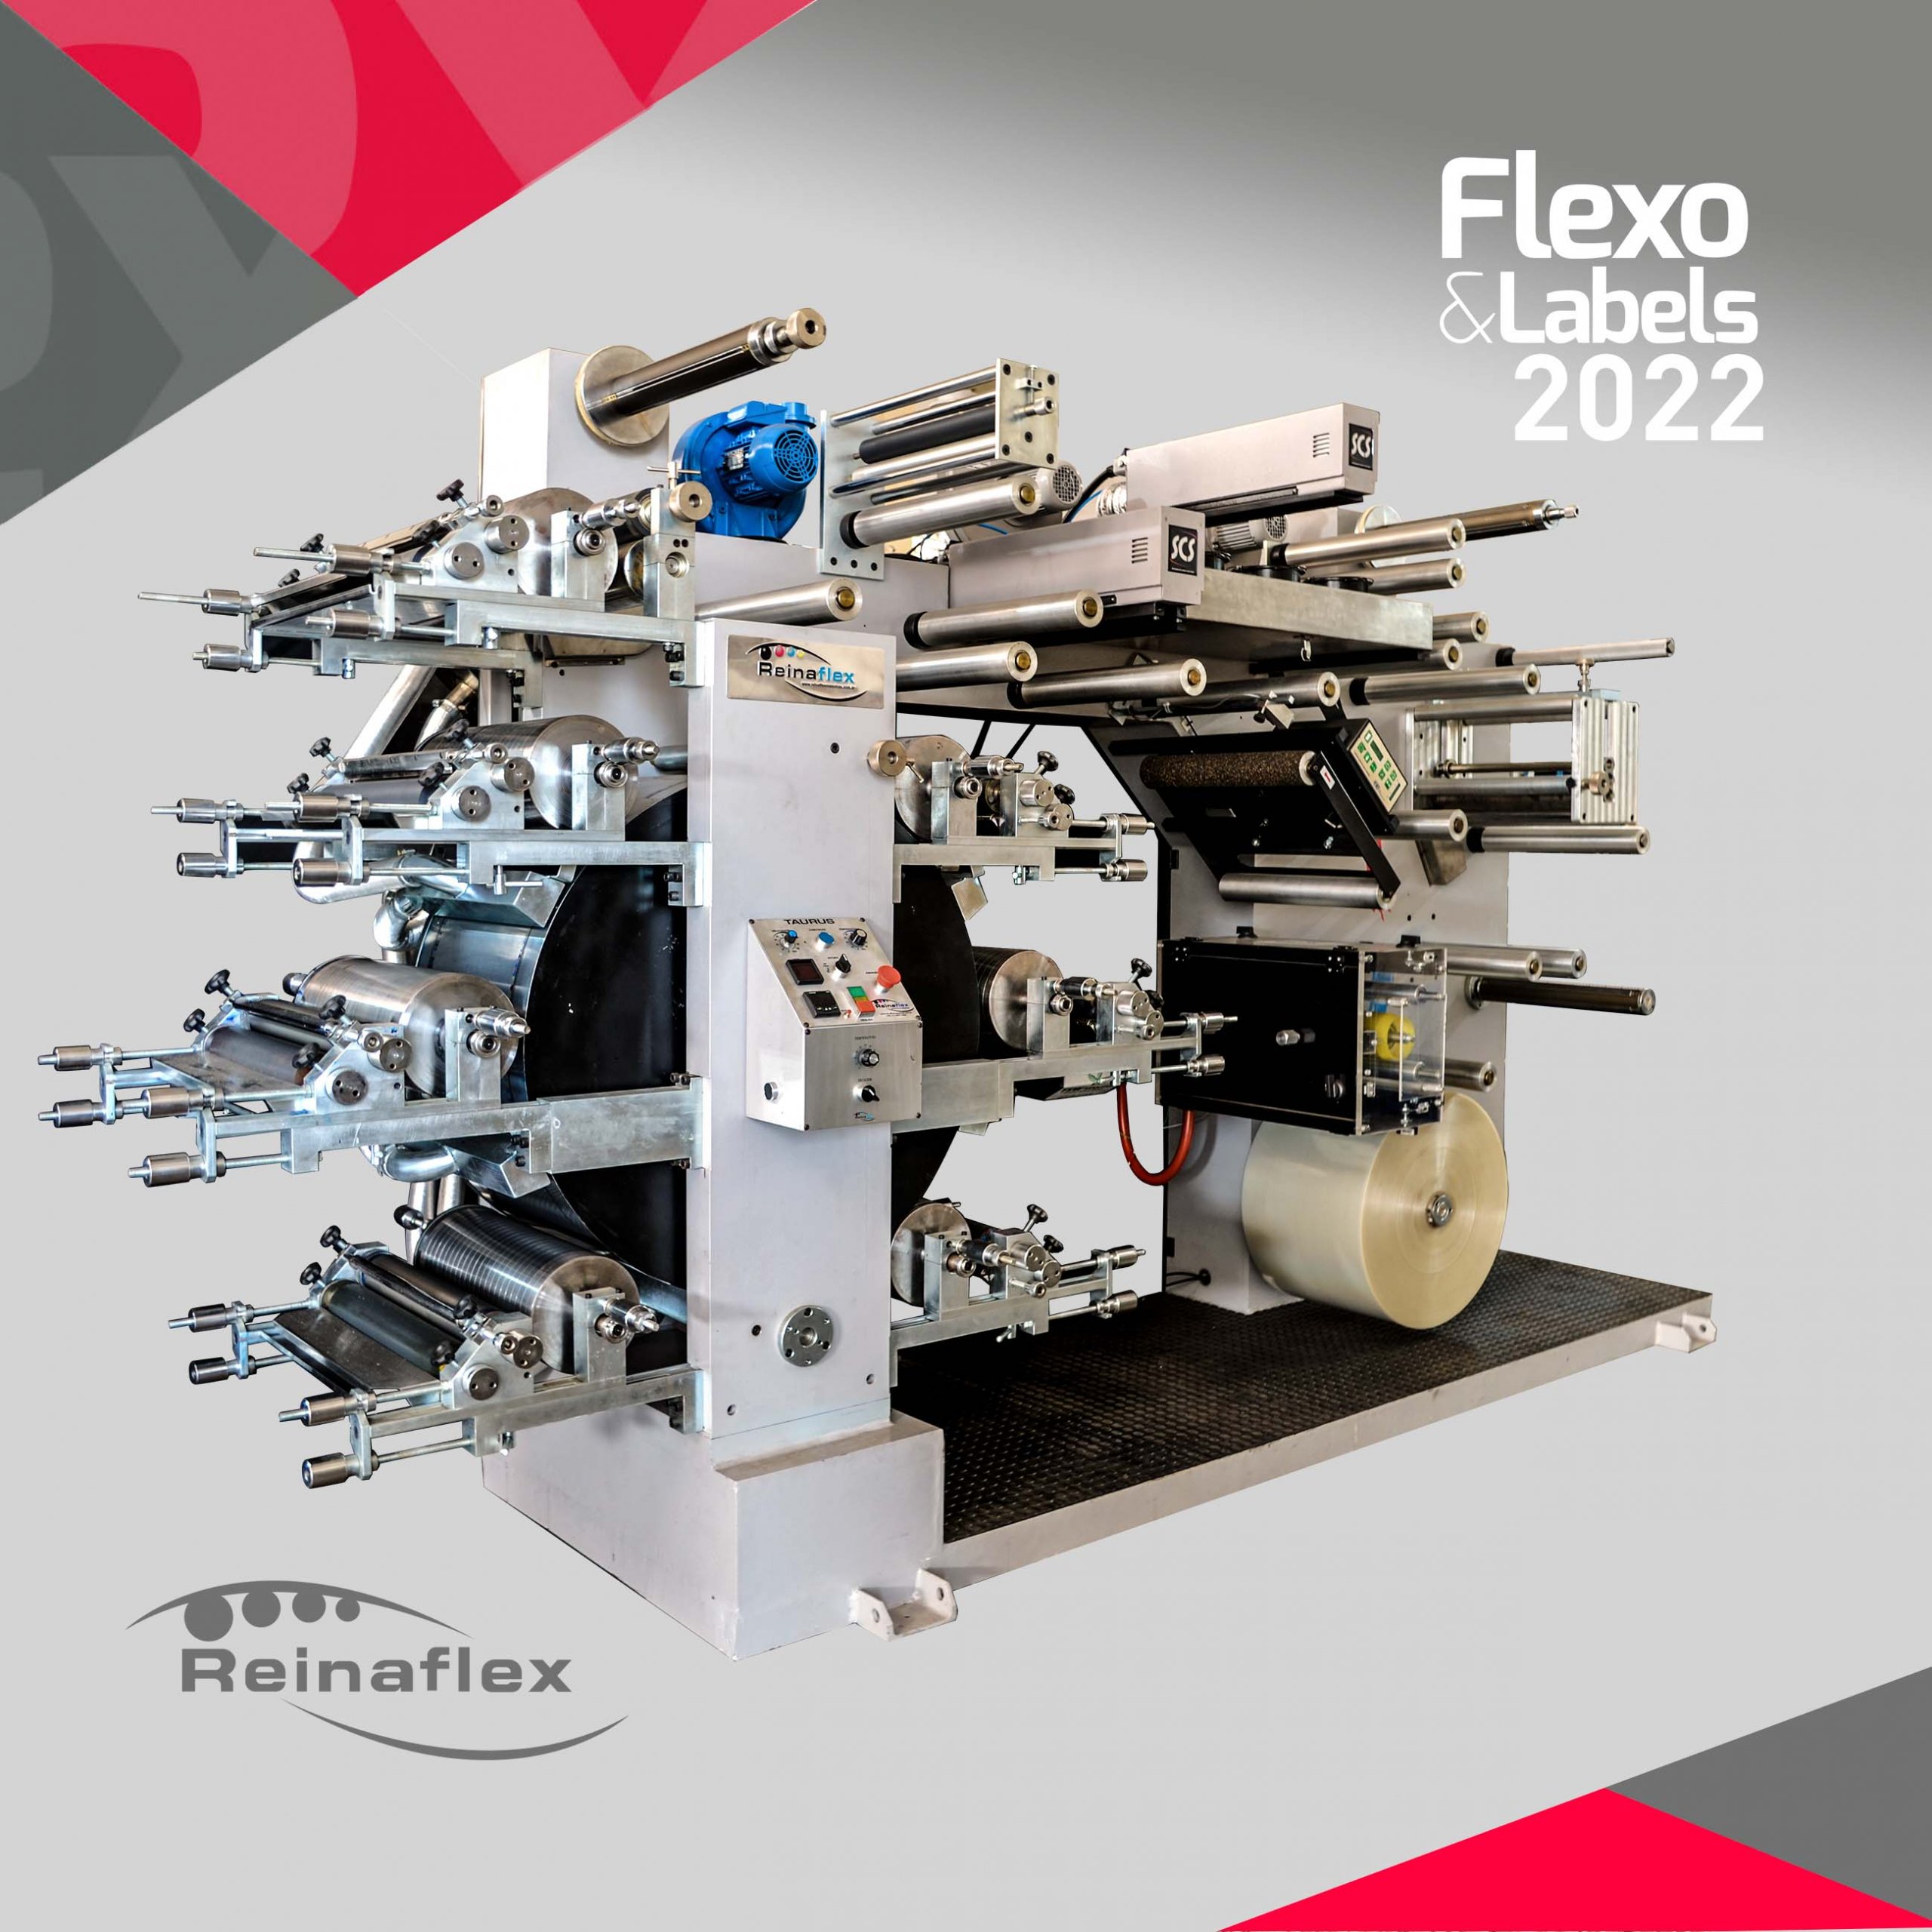 Tendo a Taurus Plus como lançamento, Reinaflex projeta sucesso na Flexo & Labels 2022